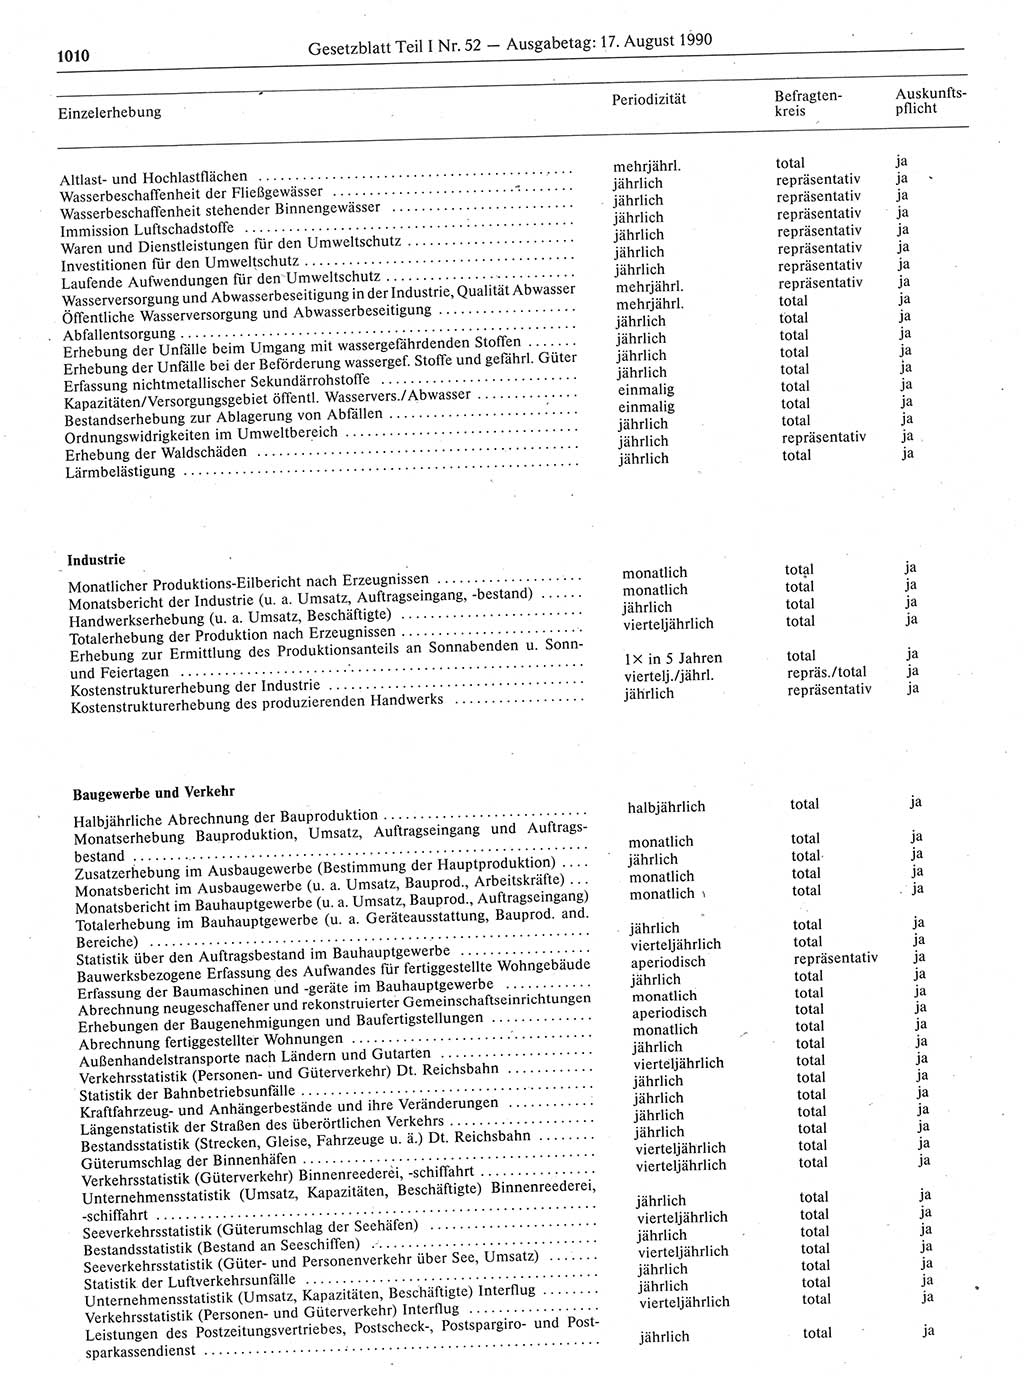 Gesetzblatt (GBl.) der Deutschen Demokratischen Republik (DDR) Teil Ⅰ 1990, Seite 1010 (GBl. DDR Ⅰ 1990, S. 1010)